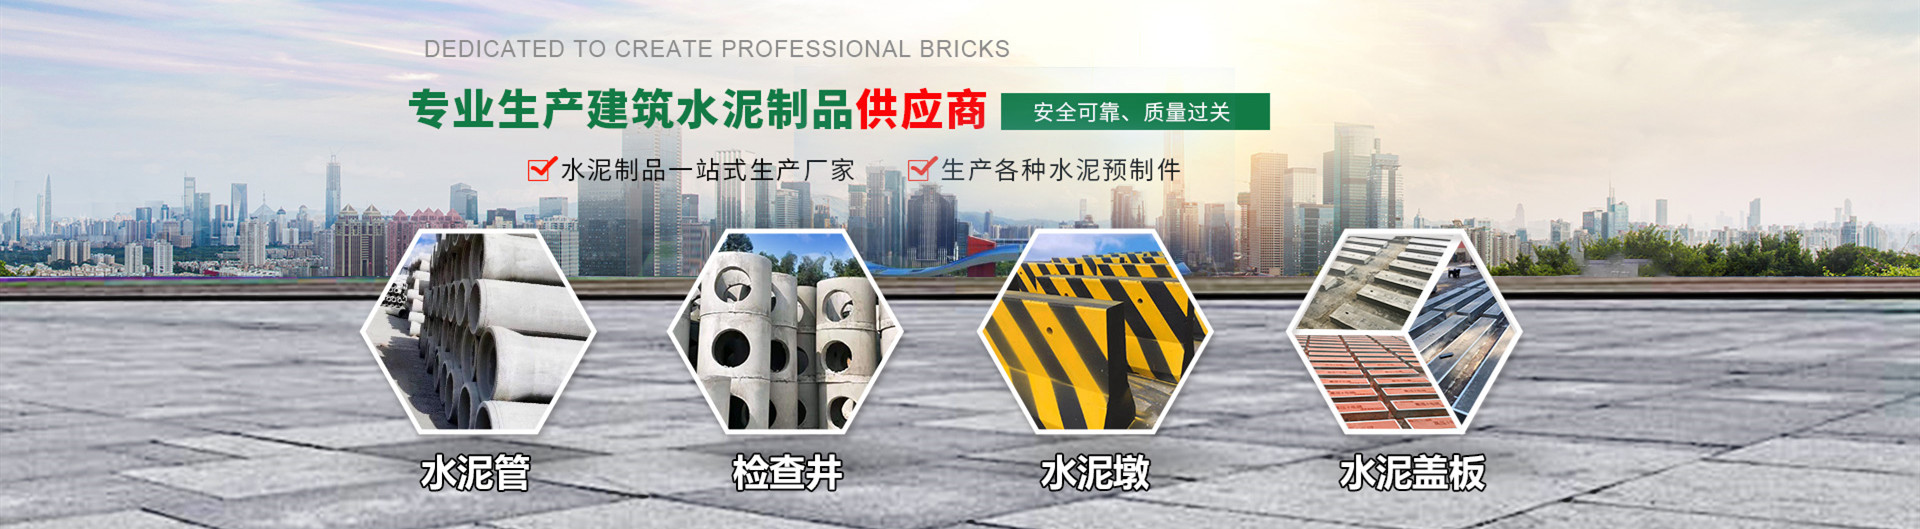 广州中领建材有限公司的主打产品有水泥管、混凝土检查井、水泥墩等